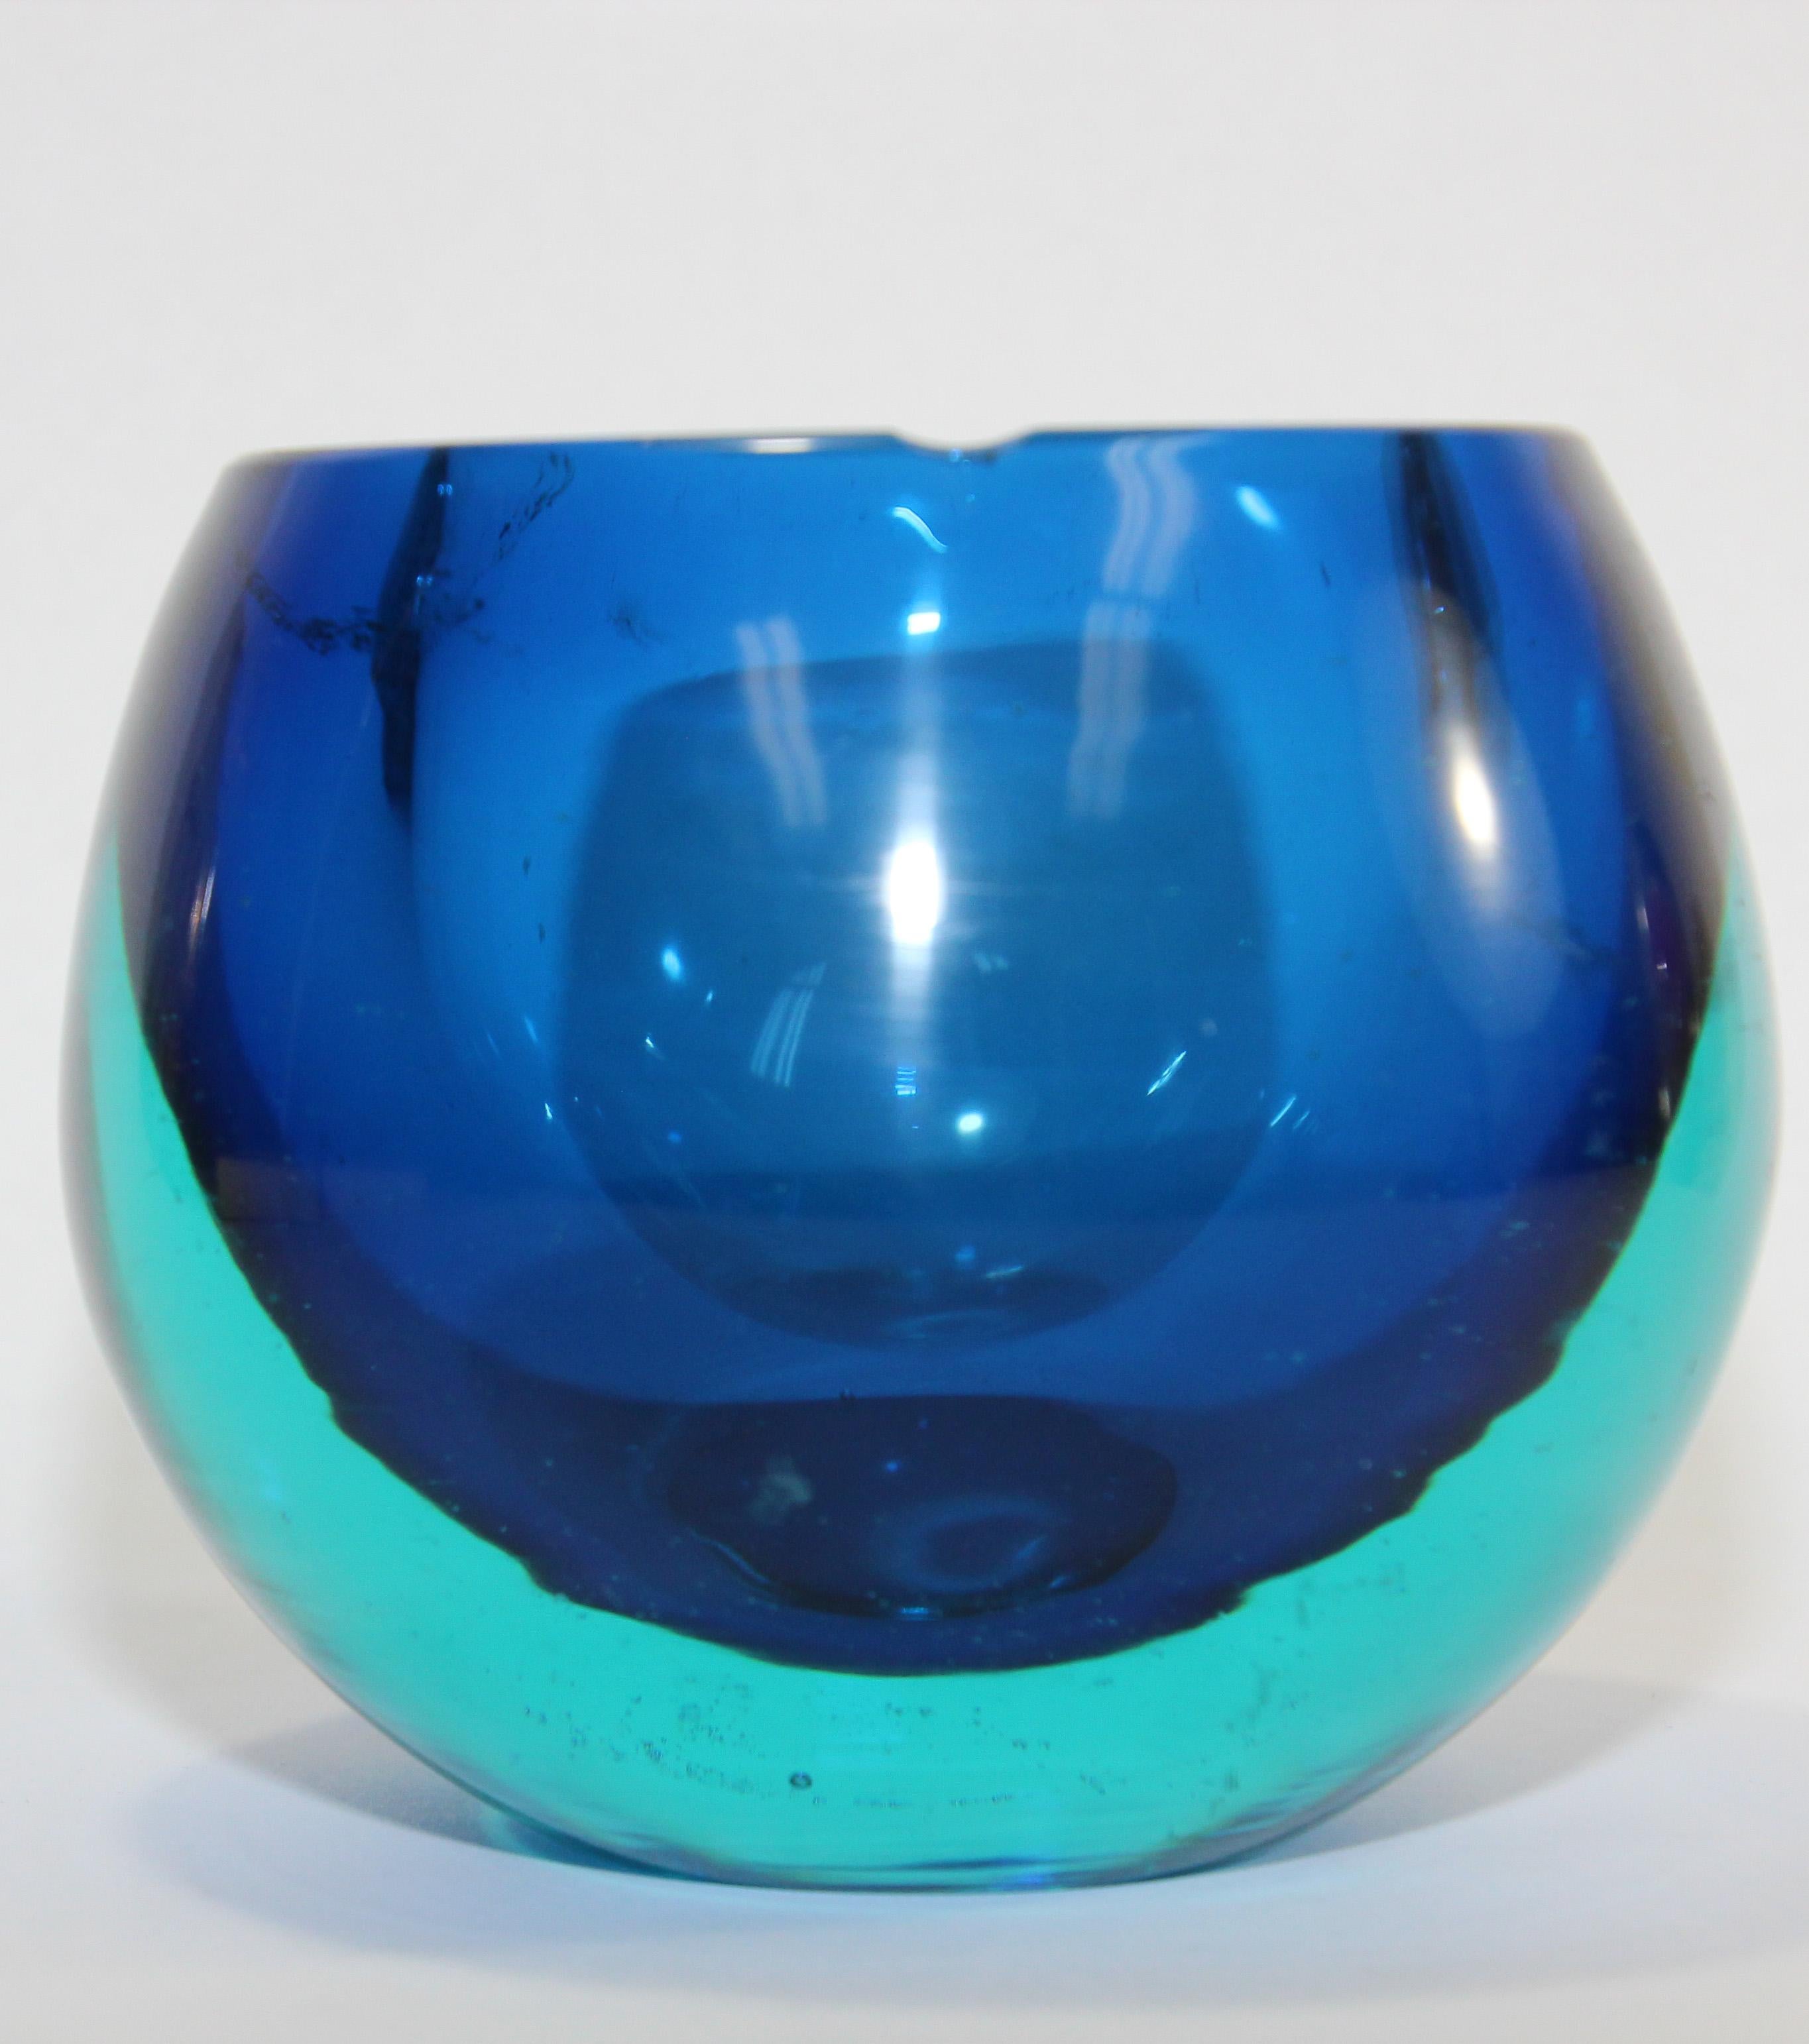 Magnifique bol ou cendrier en verre d'art soufflé à la main de Murano Vénitien. 
Cendrier en verre d'art bleu de Murano Sommerso Cenedese.
Cendrier en verre épais dans un superbe design minimal.
Un très beau et important cendrier à cigarettes en